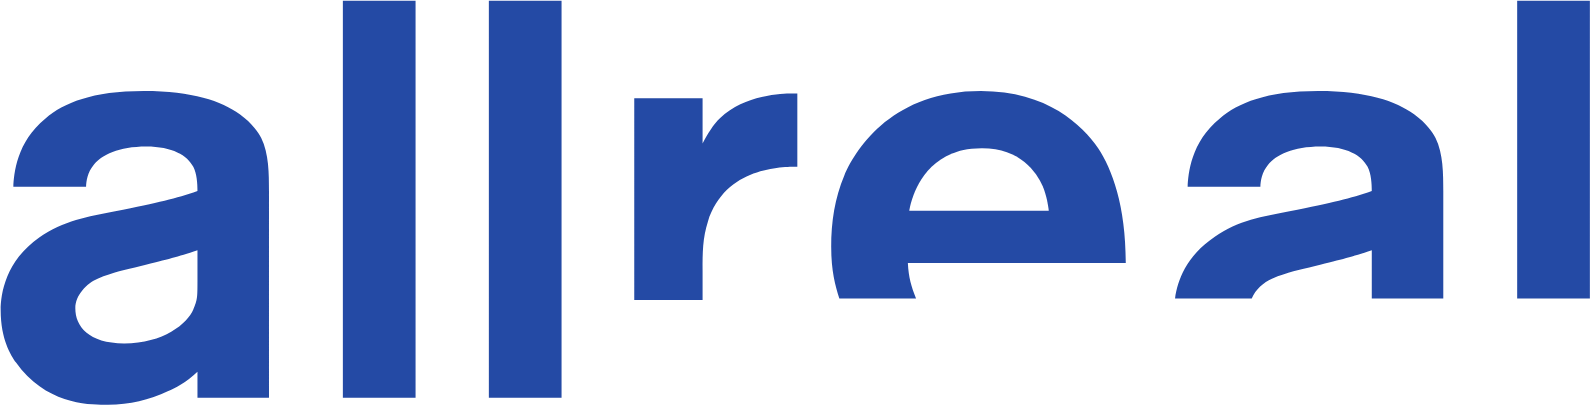 Allreal Holding logo large (transparent PNG)